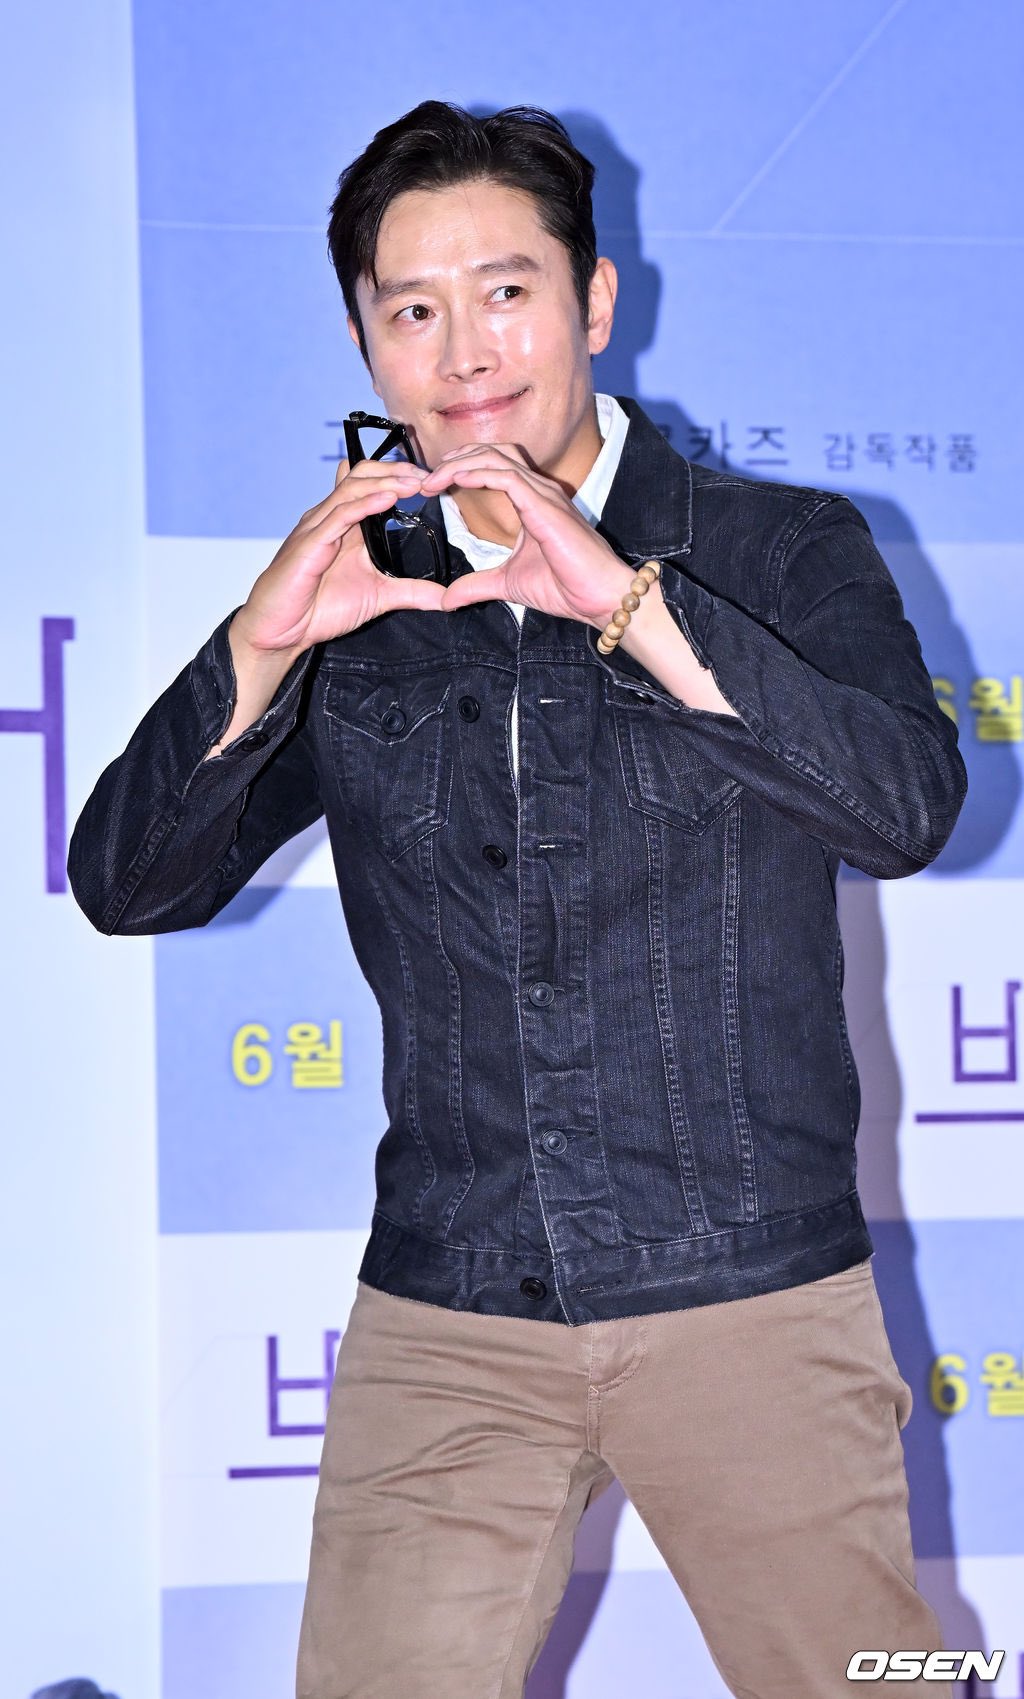 Lâu ngày lộ diện, Lee Min Ho khiến fan “bật ngửa” vì ngoại hình tăng cân, nhìn cứ tưởng ông chú nào!